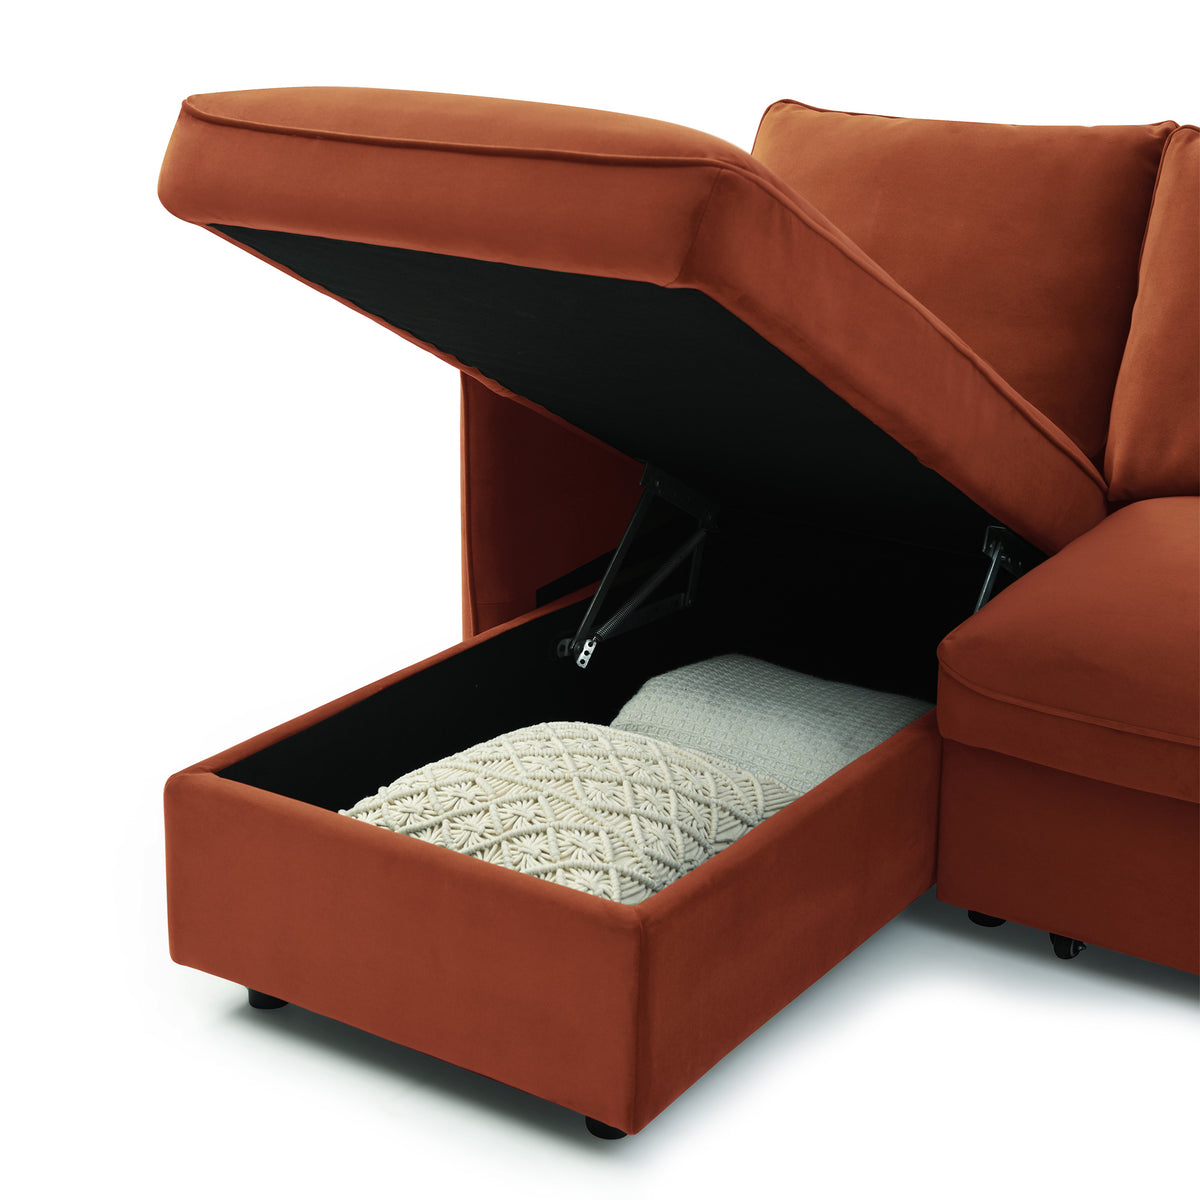 Thalia Burnt Orange Velvet 3 Seater Corner Chaise Sofa Bed